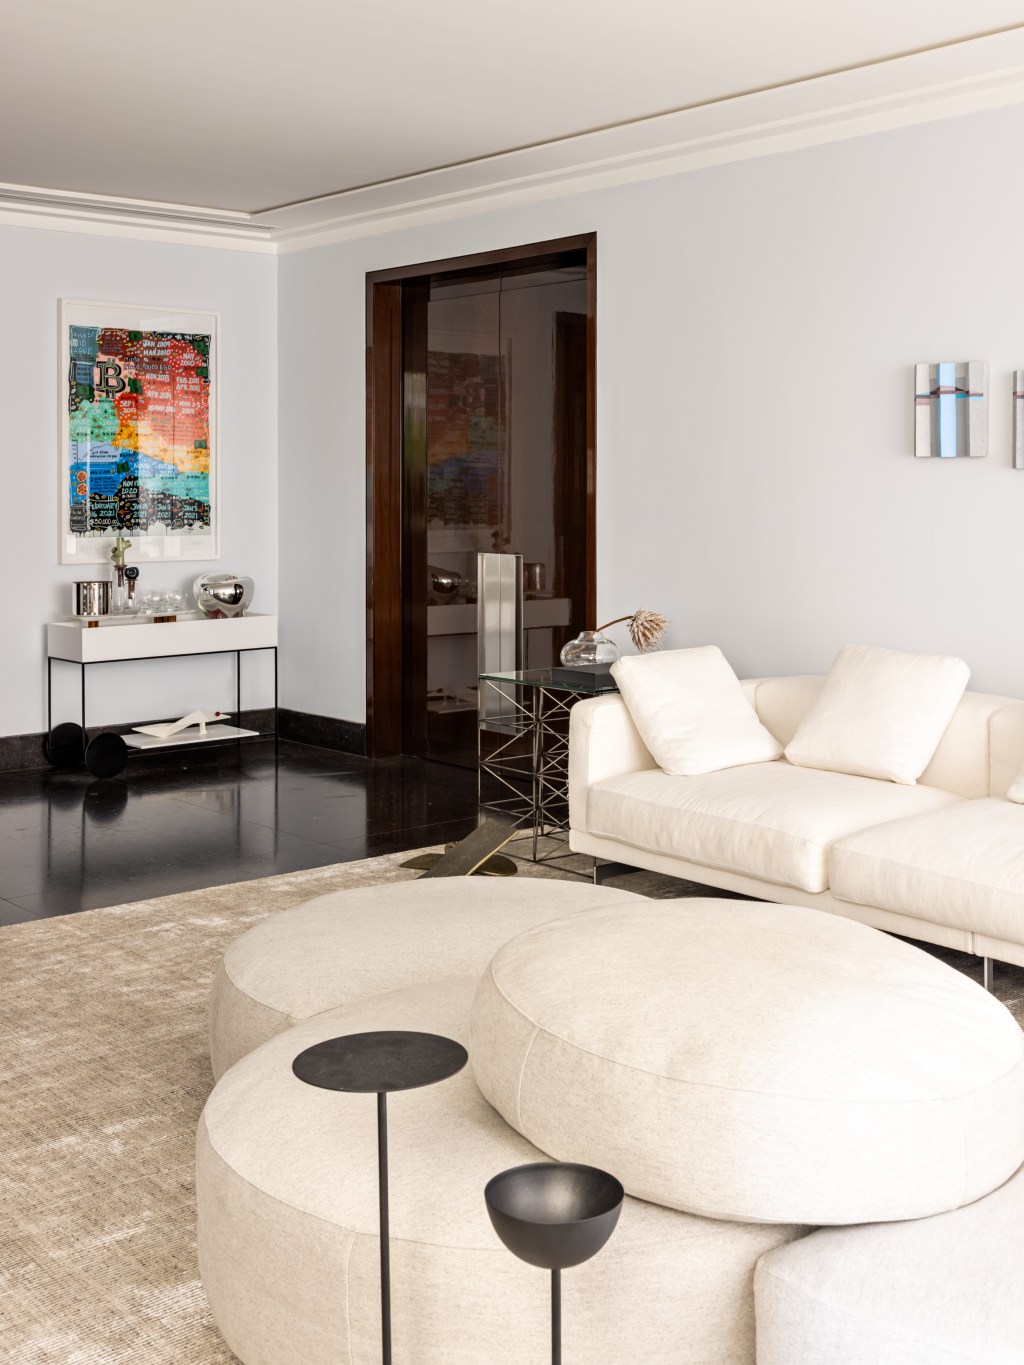 Apartamento de 550 m² ganha espaço para cabine de DJ no living. Projeto de Navarro Arquitetura. Na foto, sala com sofa ilha e quadros.